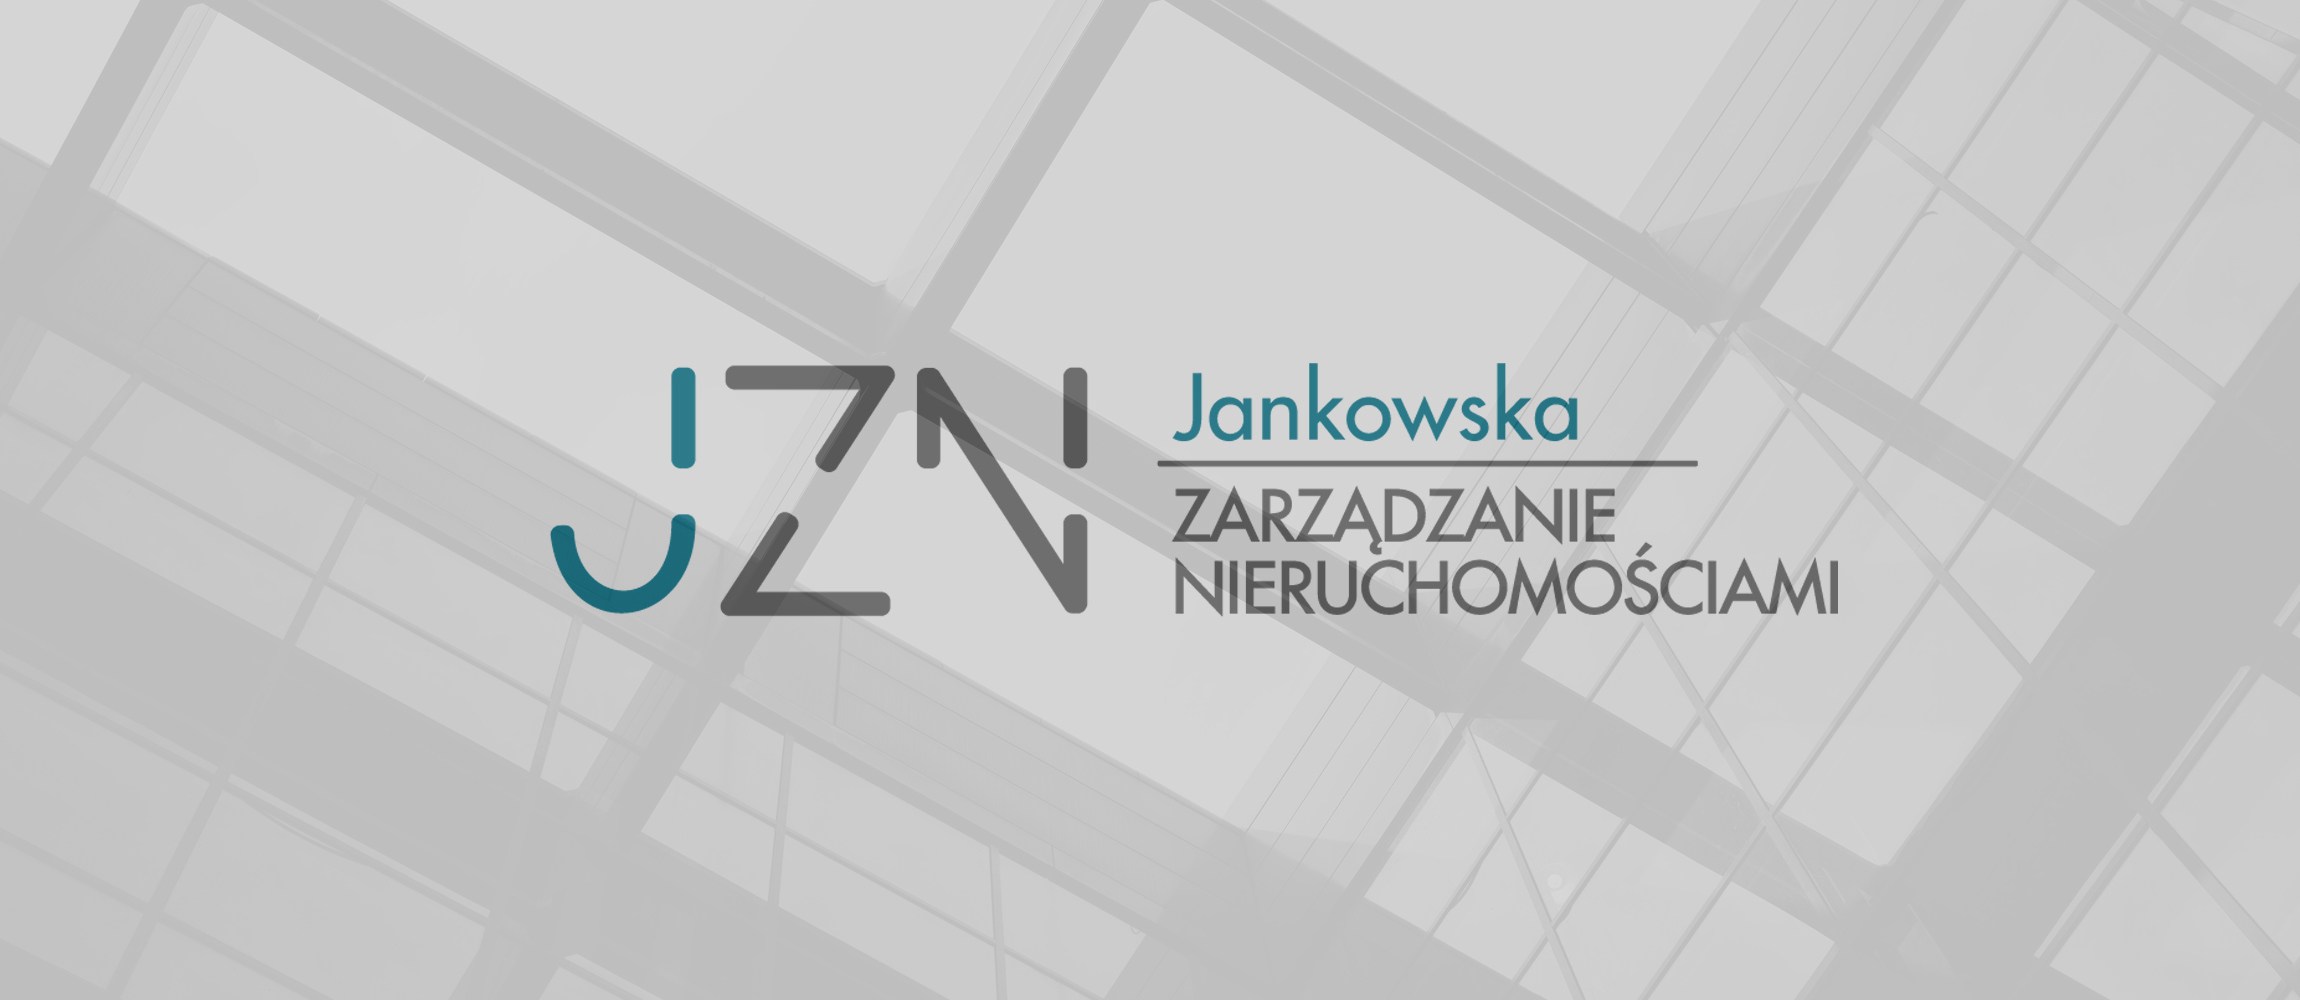 Jankowska - Zarządzanie nieruchomościami